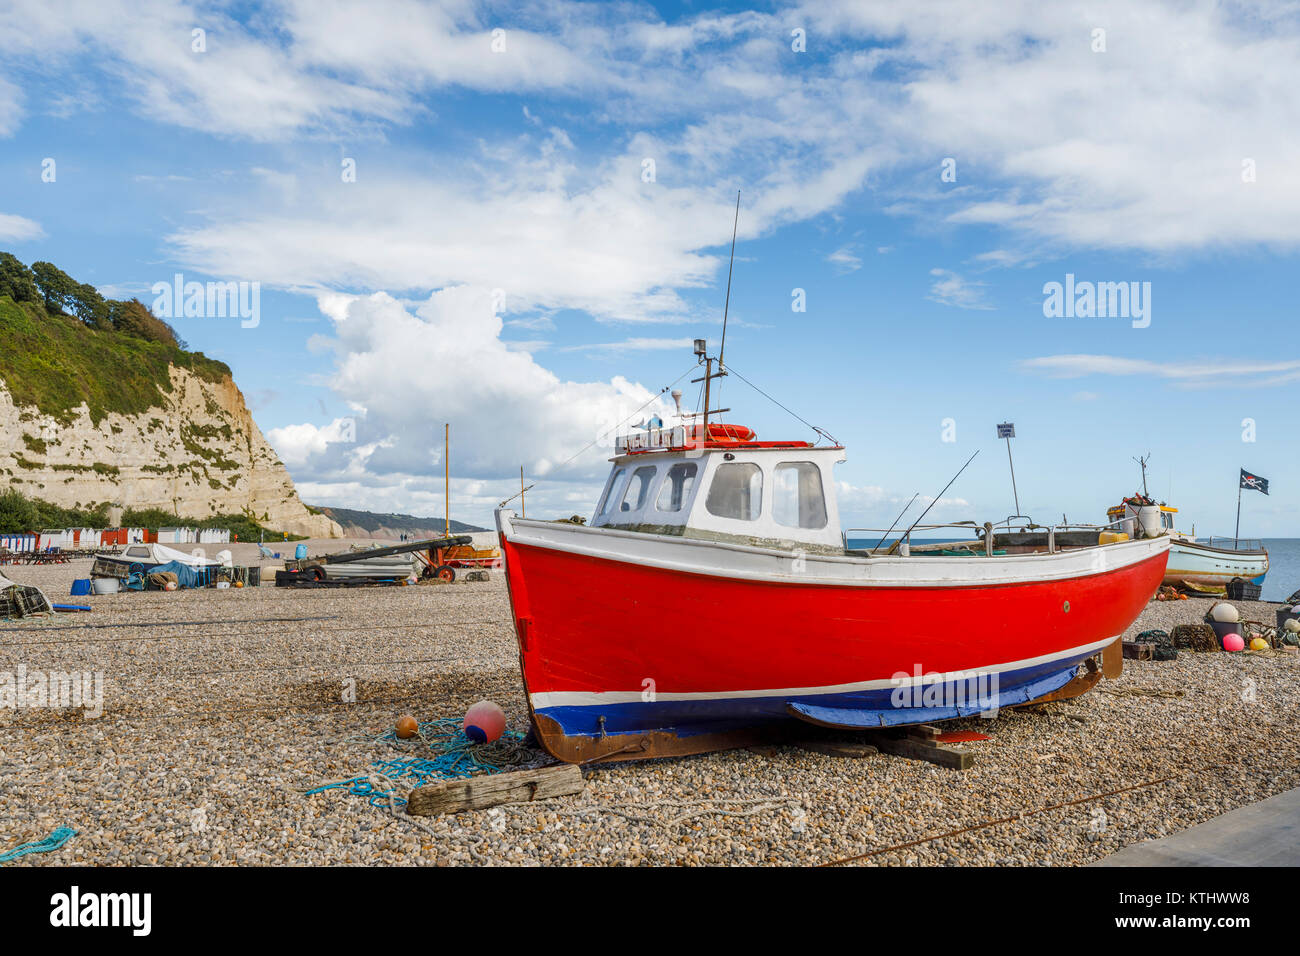 Traditionelles rotes Fischerboot Strände an der Küste bei Bier, einem kleinen Dorf an der Küste auf der East Devon World Heritage Coast, South Coast von England, Großbritannien Stockfoto